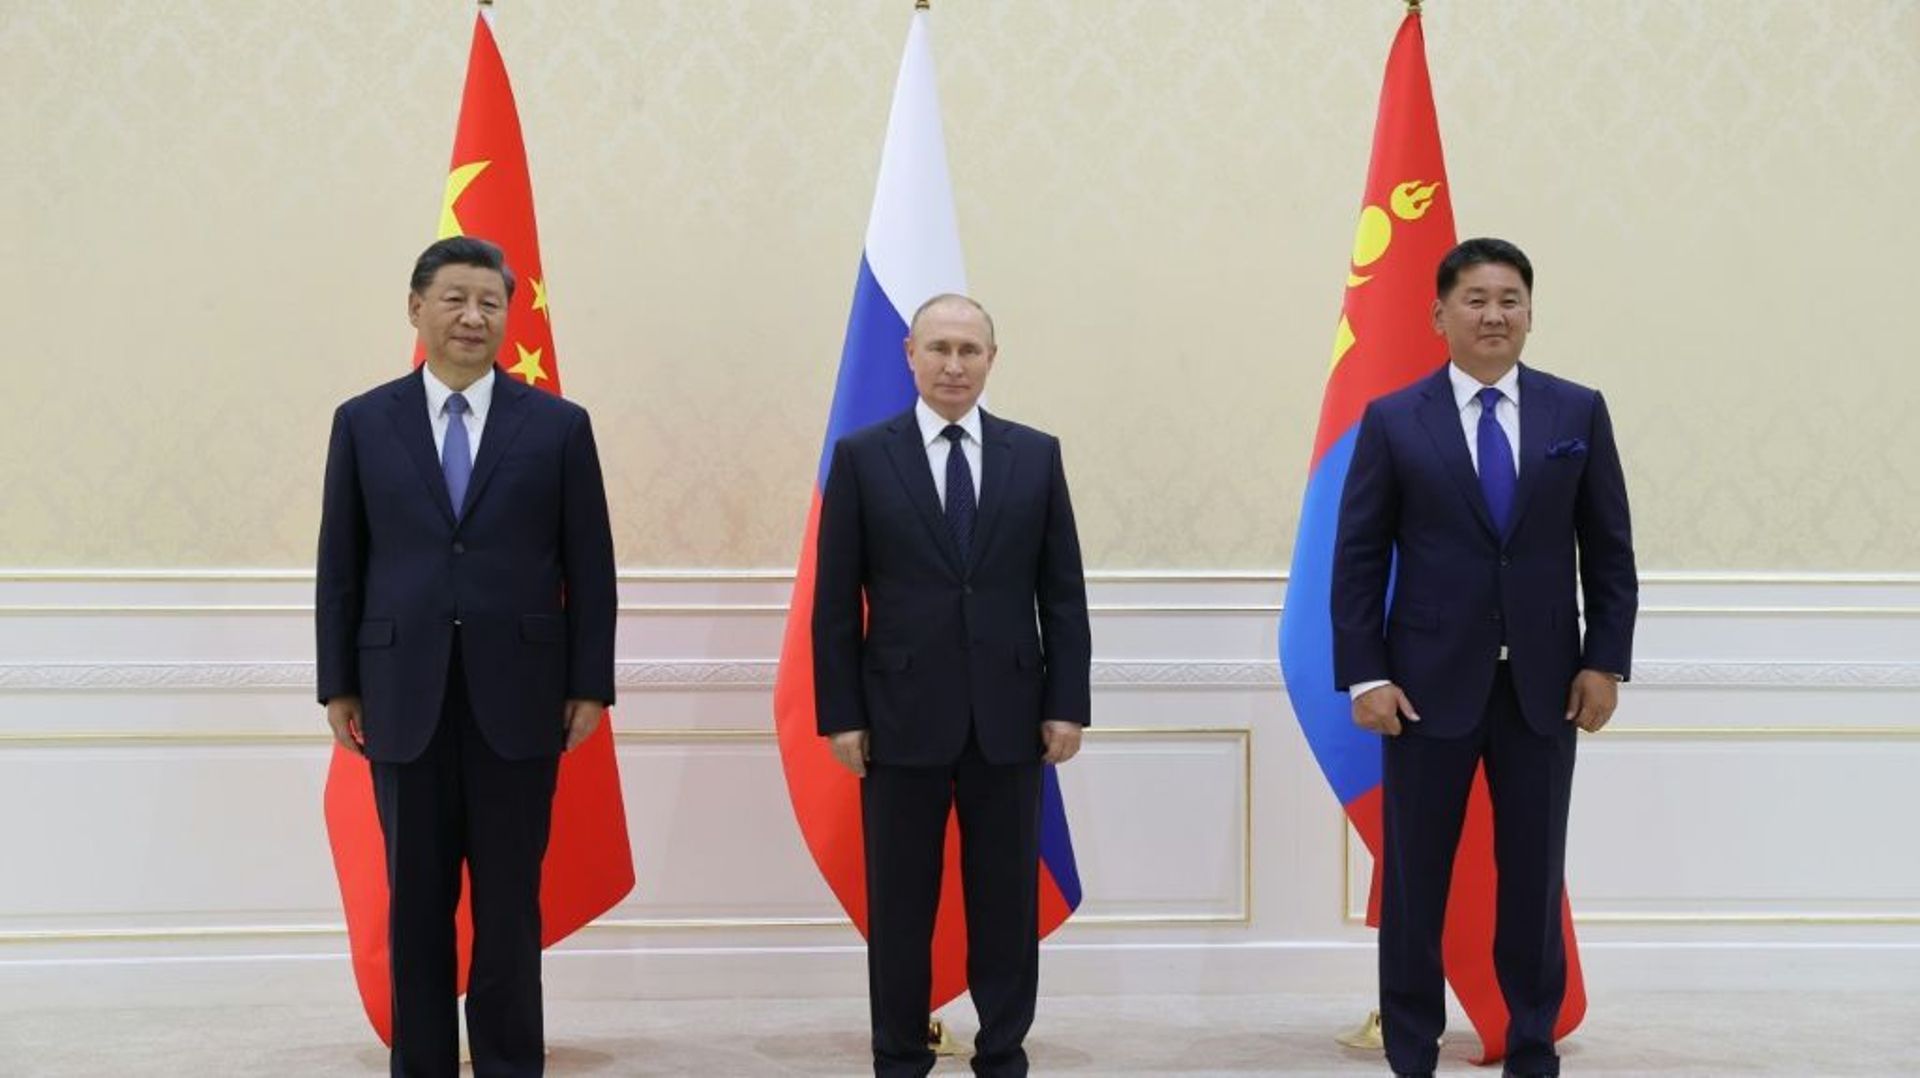 De G à D, le président chinois Xi Jinping, le président russe Vladimir Poutine et le président mongol Ukhnaa Khurelsukh lors d’une rencontre trilatérale au sommet de l’Organisation de coopération de Shanghai (OCS) à Samarcande le 15 septembre 2022